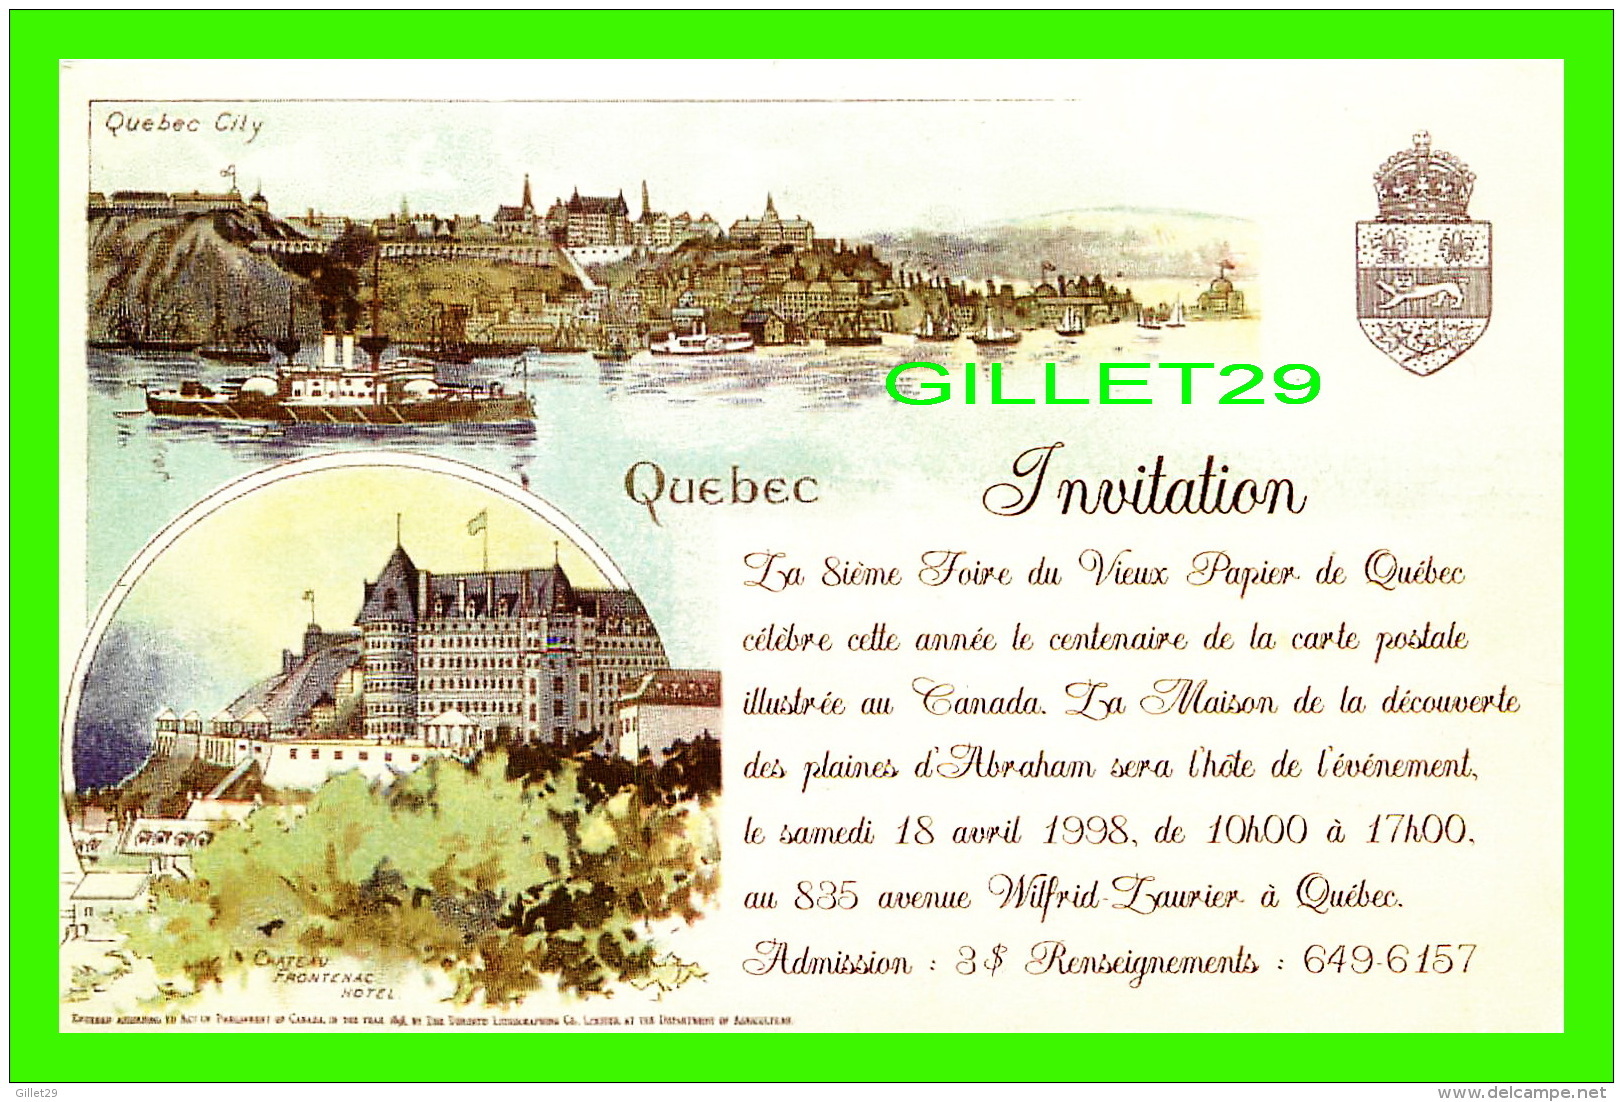 QUÉBEC - INVITATION, LA 8ie FOIRE DU VIEUX PAPIER DE QUÉBEC EN 1998 - CANADIAN POSTAL CARD - - Québec - La Cité